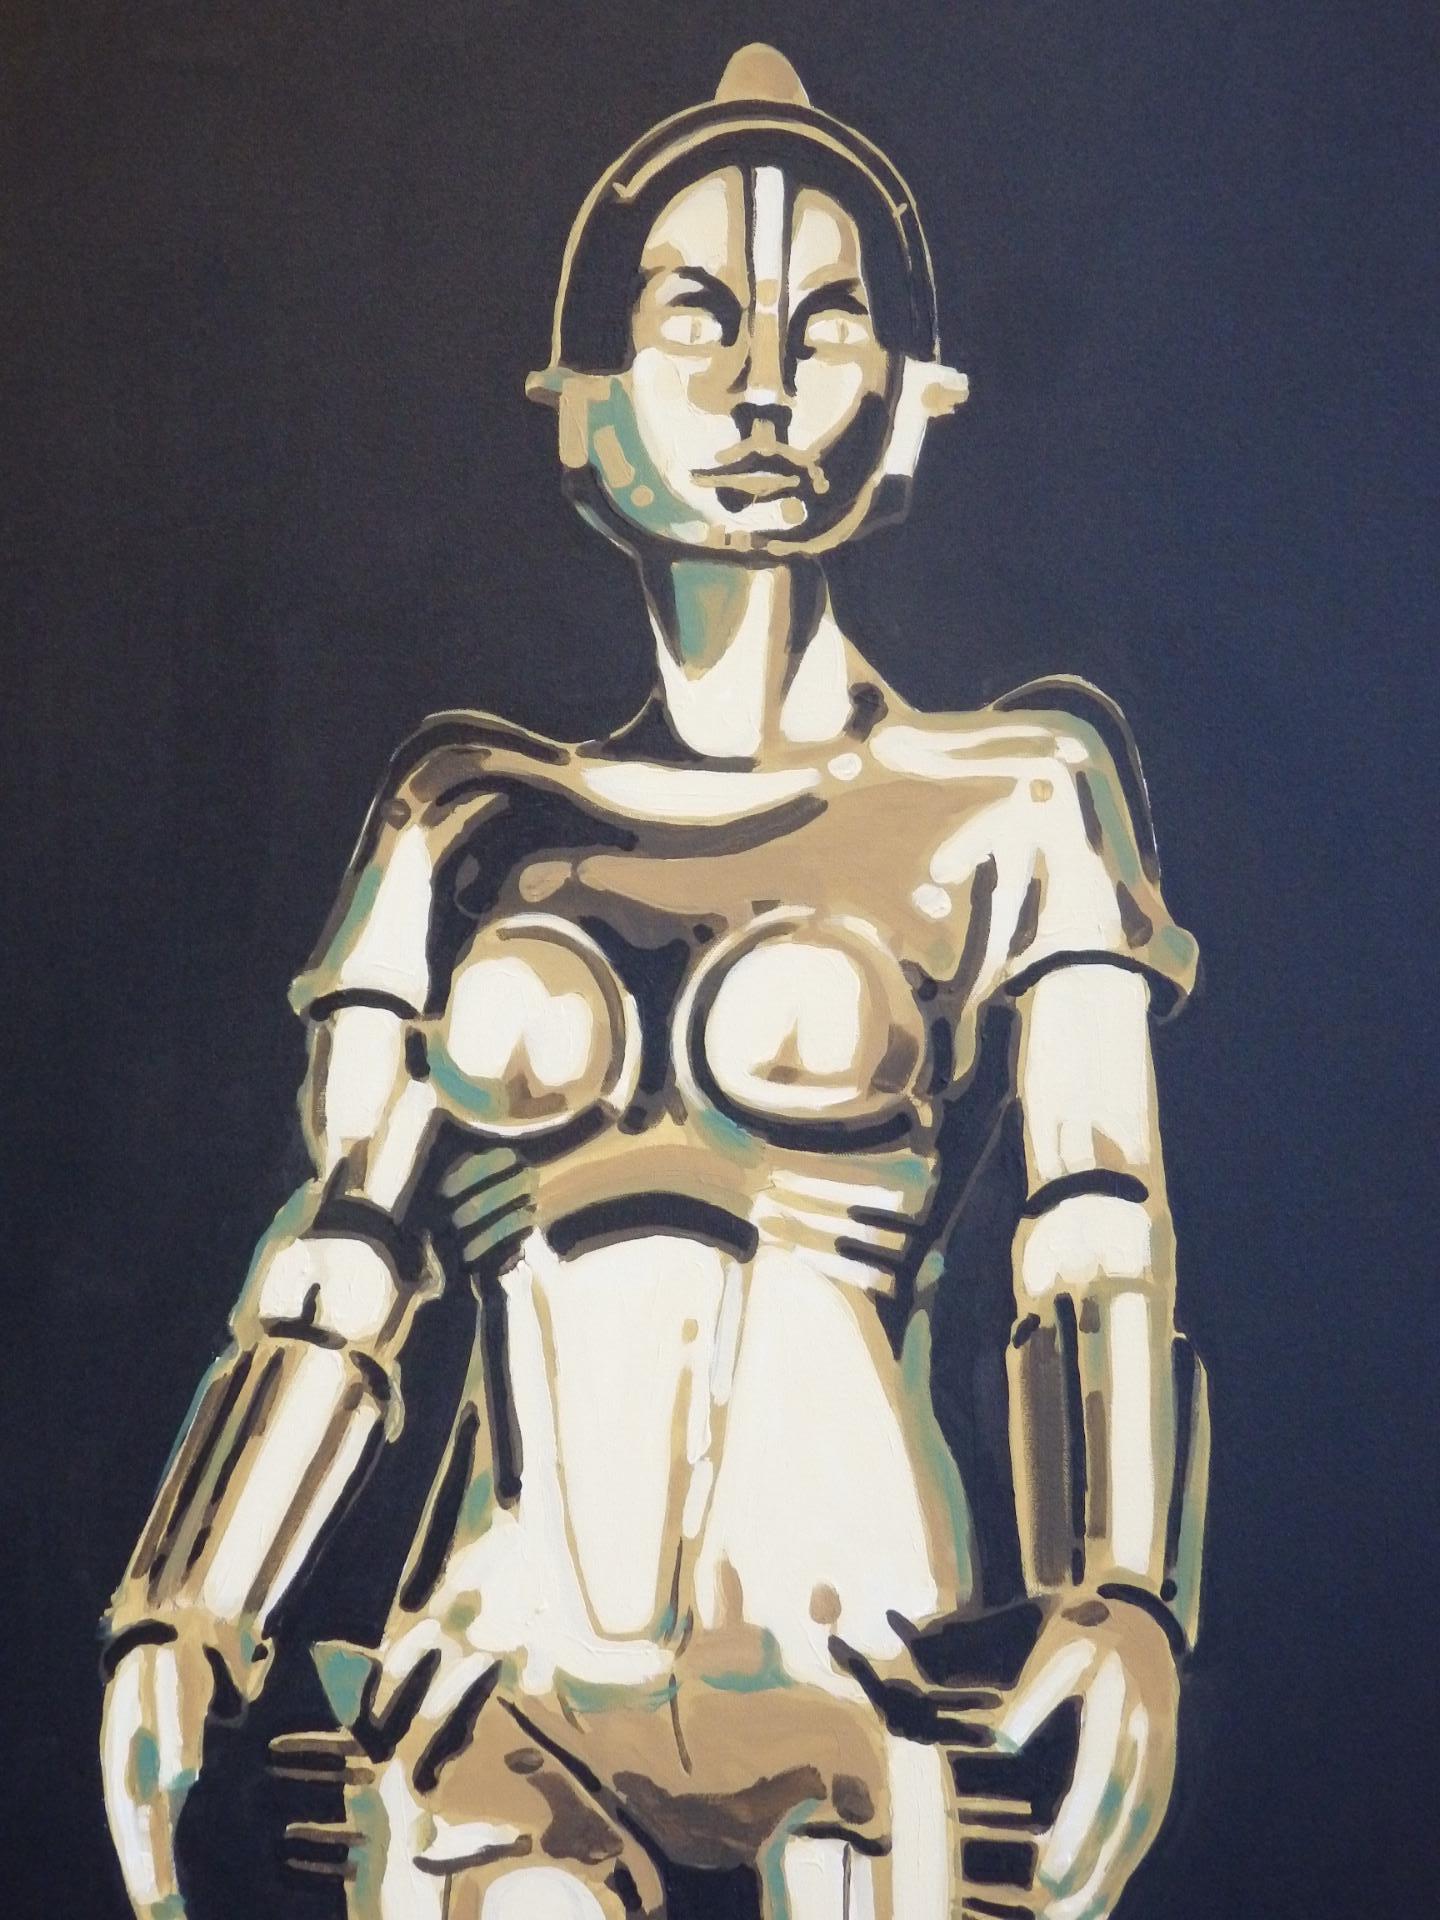 Atemberaubendes Gemälde von Machinenmensch (Roboter) Maria aus Fritz Langs Stummfilm Meisterwerk Metropolis . Gemalt von Billy Couch, einem Künstler aus der Region Detroit. Der Maschinenmensch ist eine Figur in Fritz Langs Film Metropolis, die von